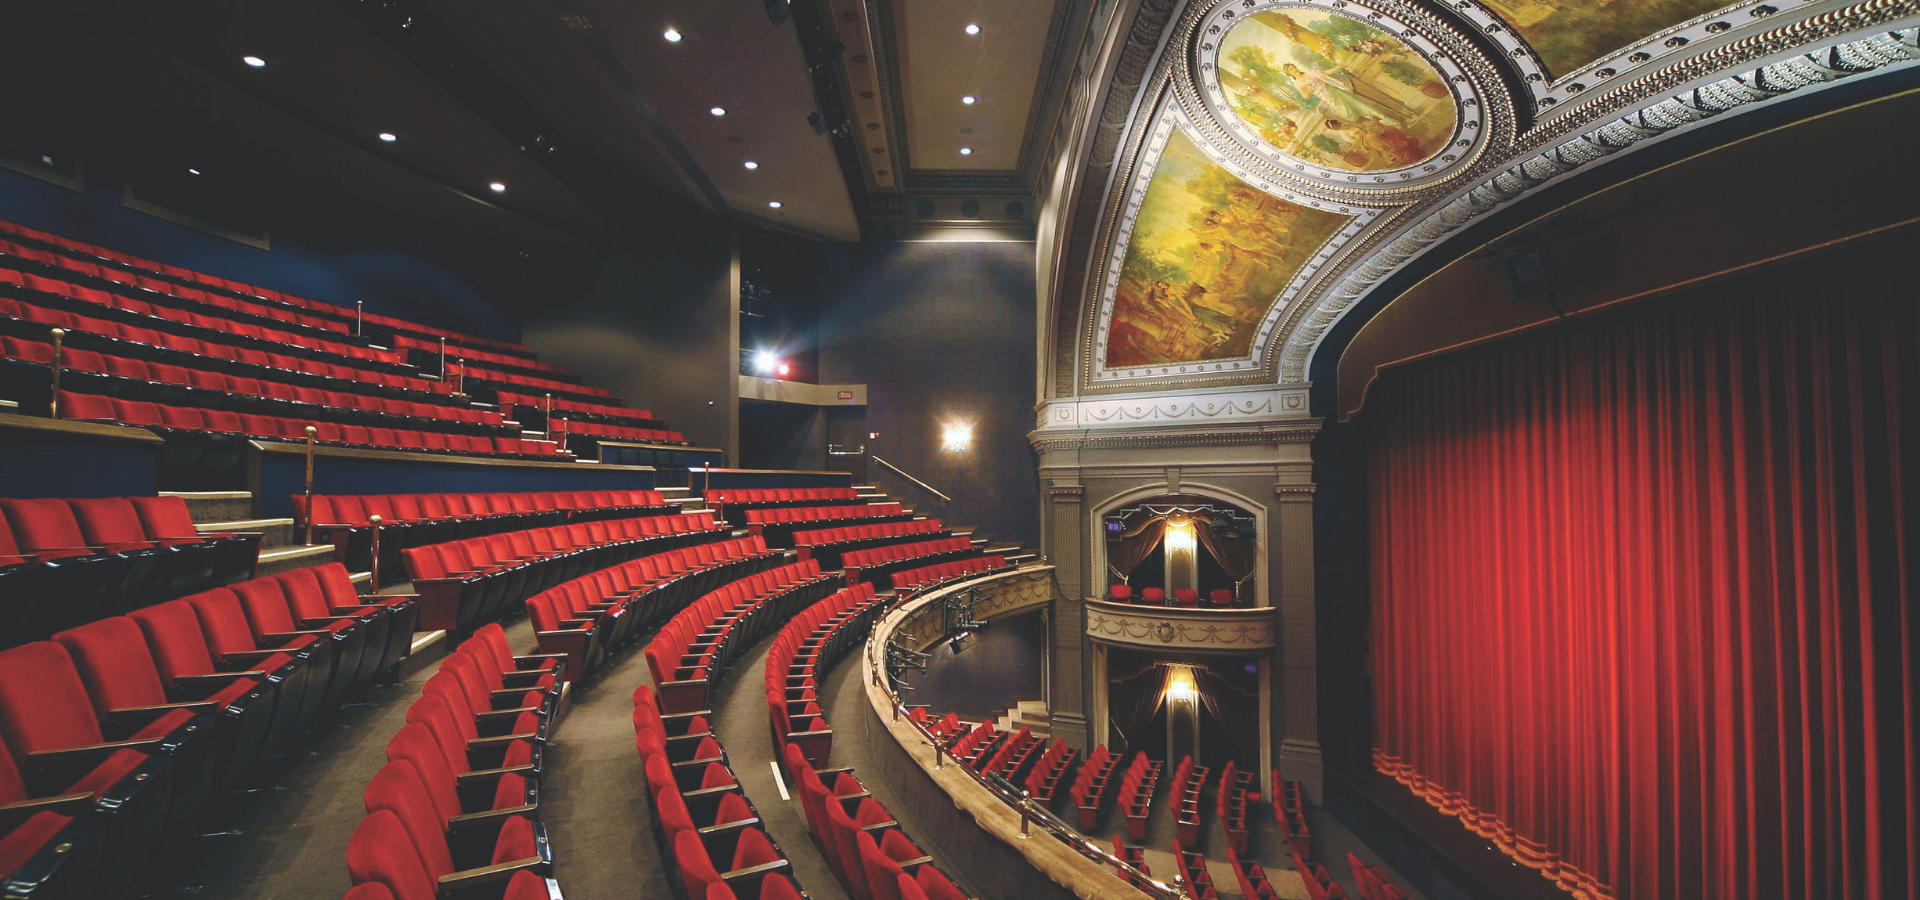 Inside the grand theatre.